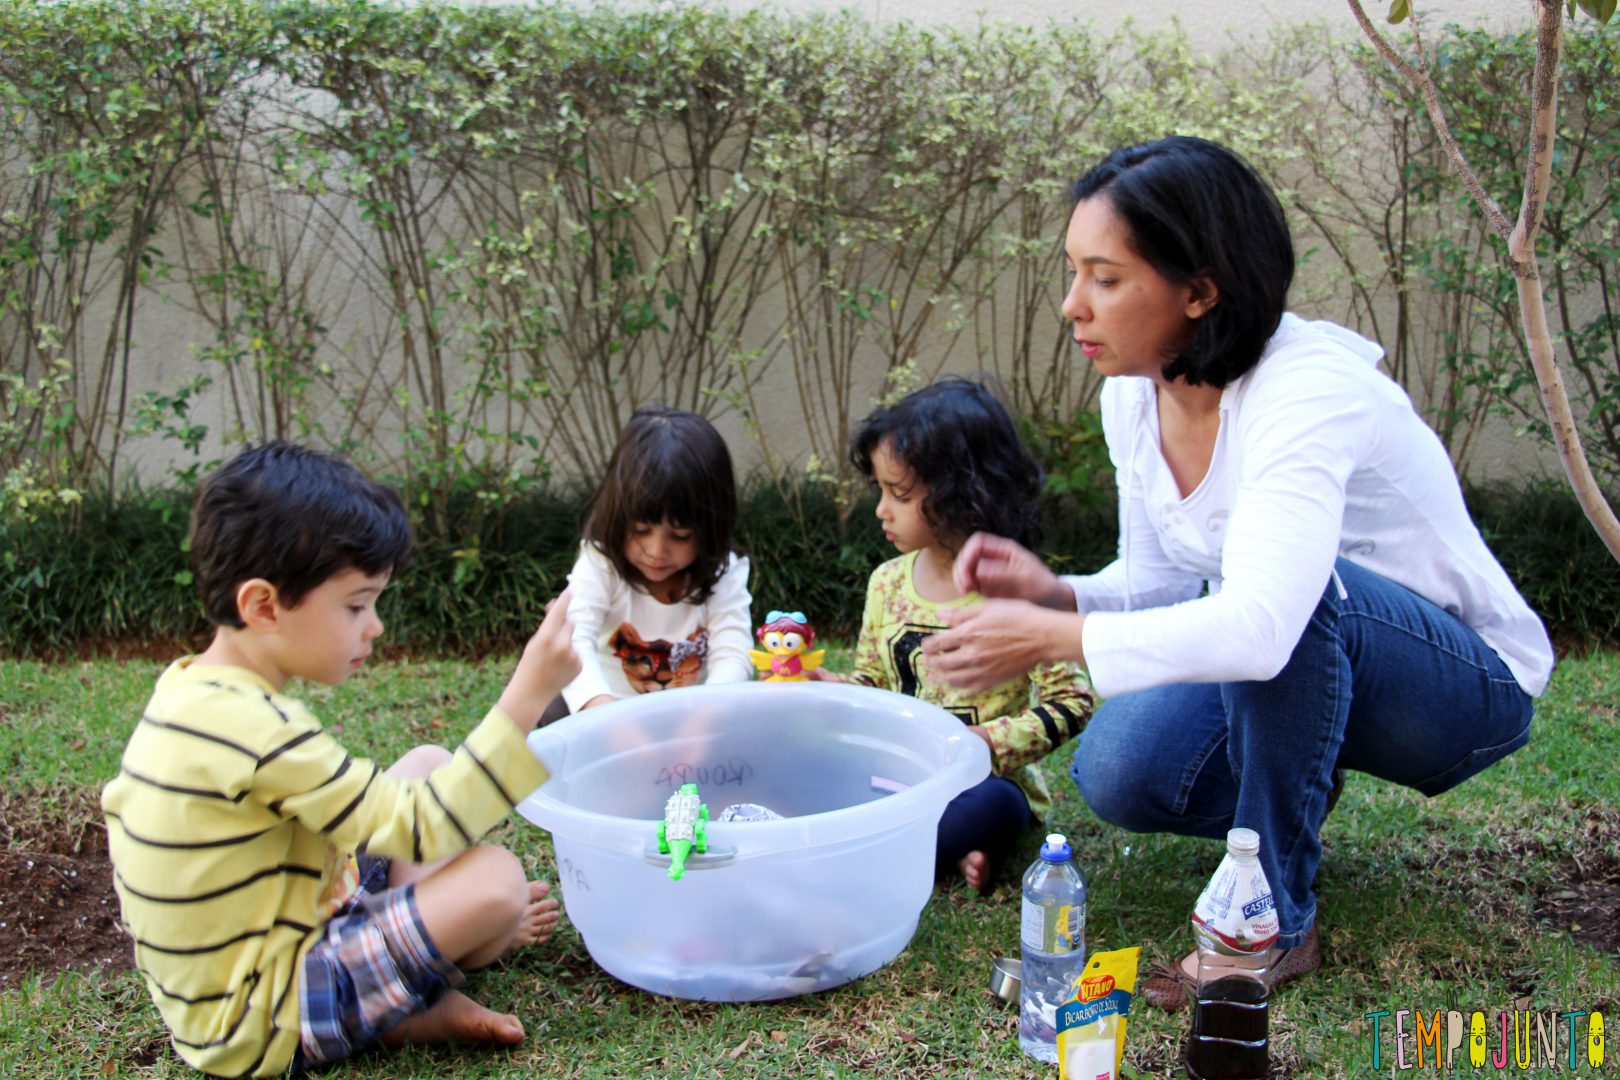 Como fazer um vulcão em casa: foto de três crianças e uma mulher adulta, que estão em um quintal e mexem em uma bacia.